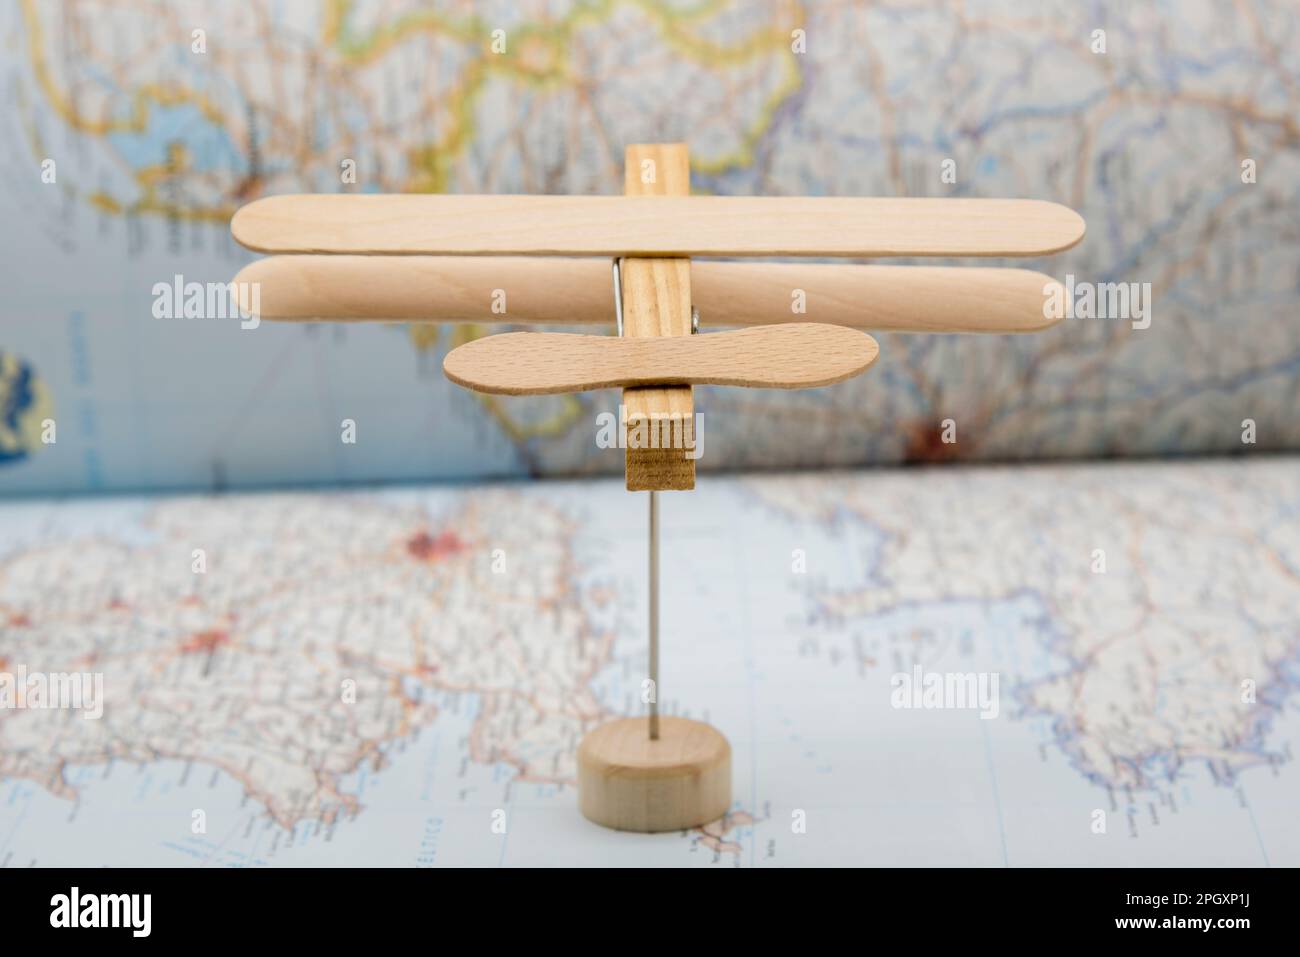 Avión de madera hecho con palos de helado y una pinza de la ropa, volando sobre un mapa Stock Photo